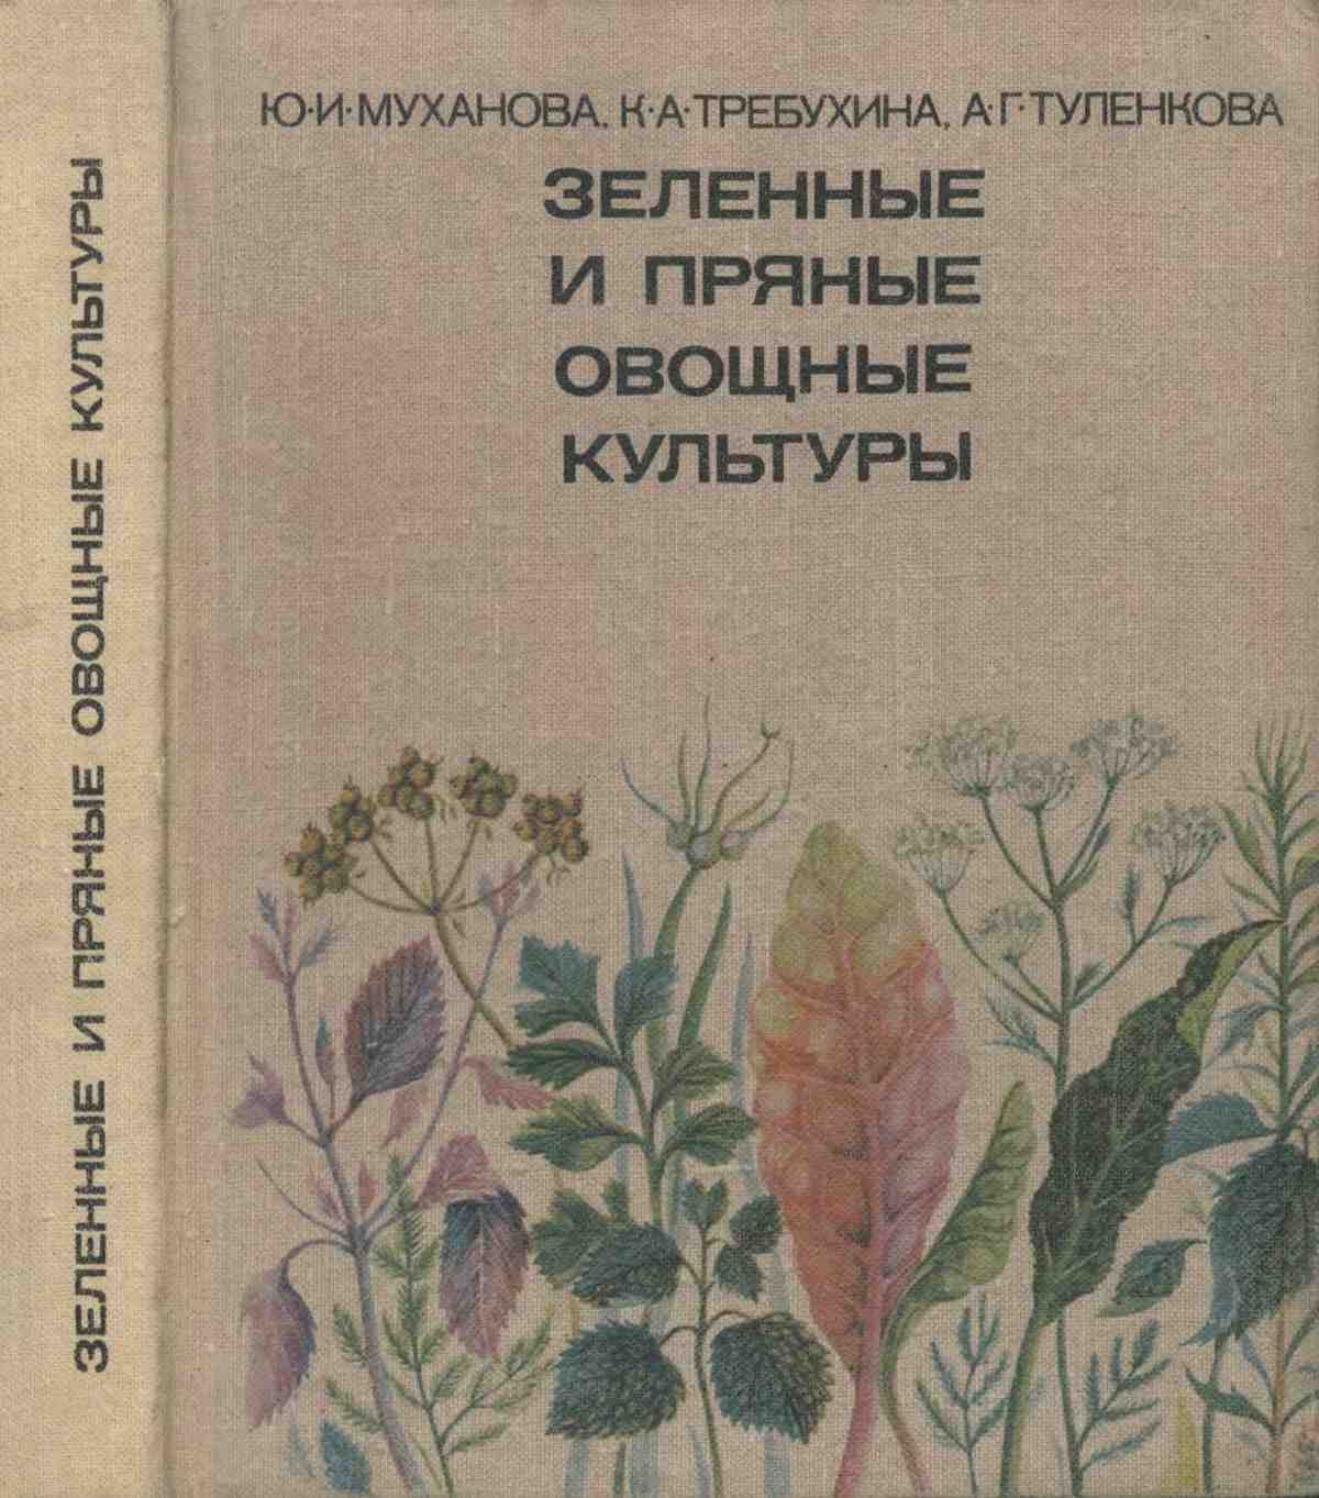 Зеленные и пряные овощные культуры - 1977 ссср